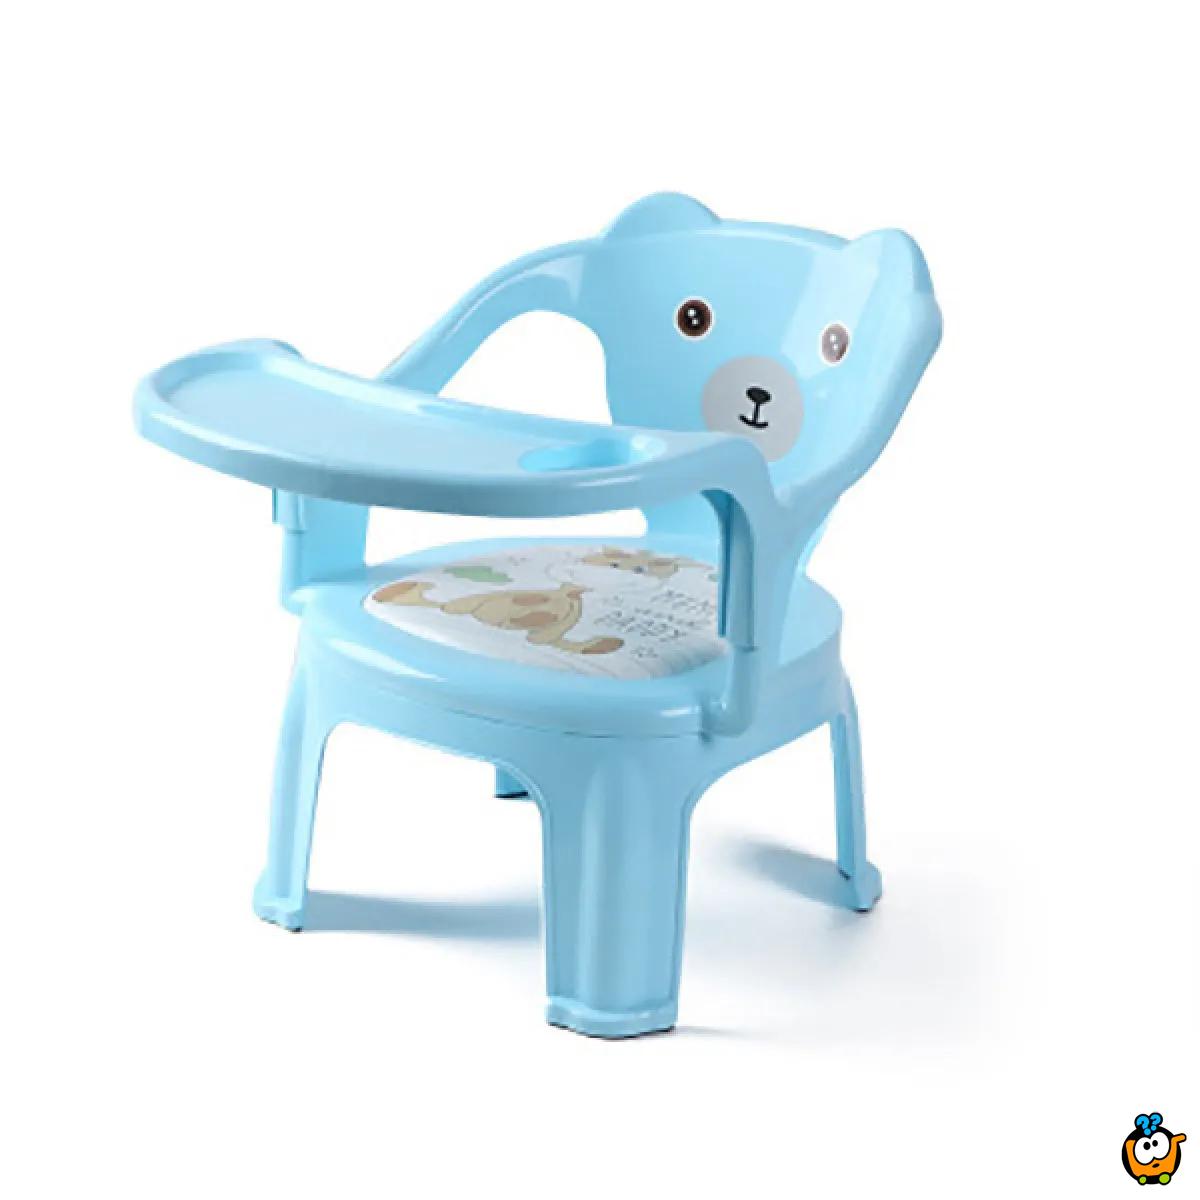 Bebi stolica sa poslužavnikom - za jelo i igru